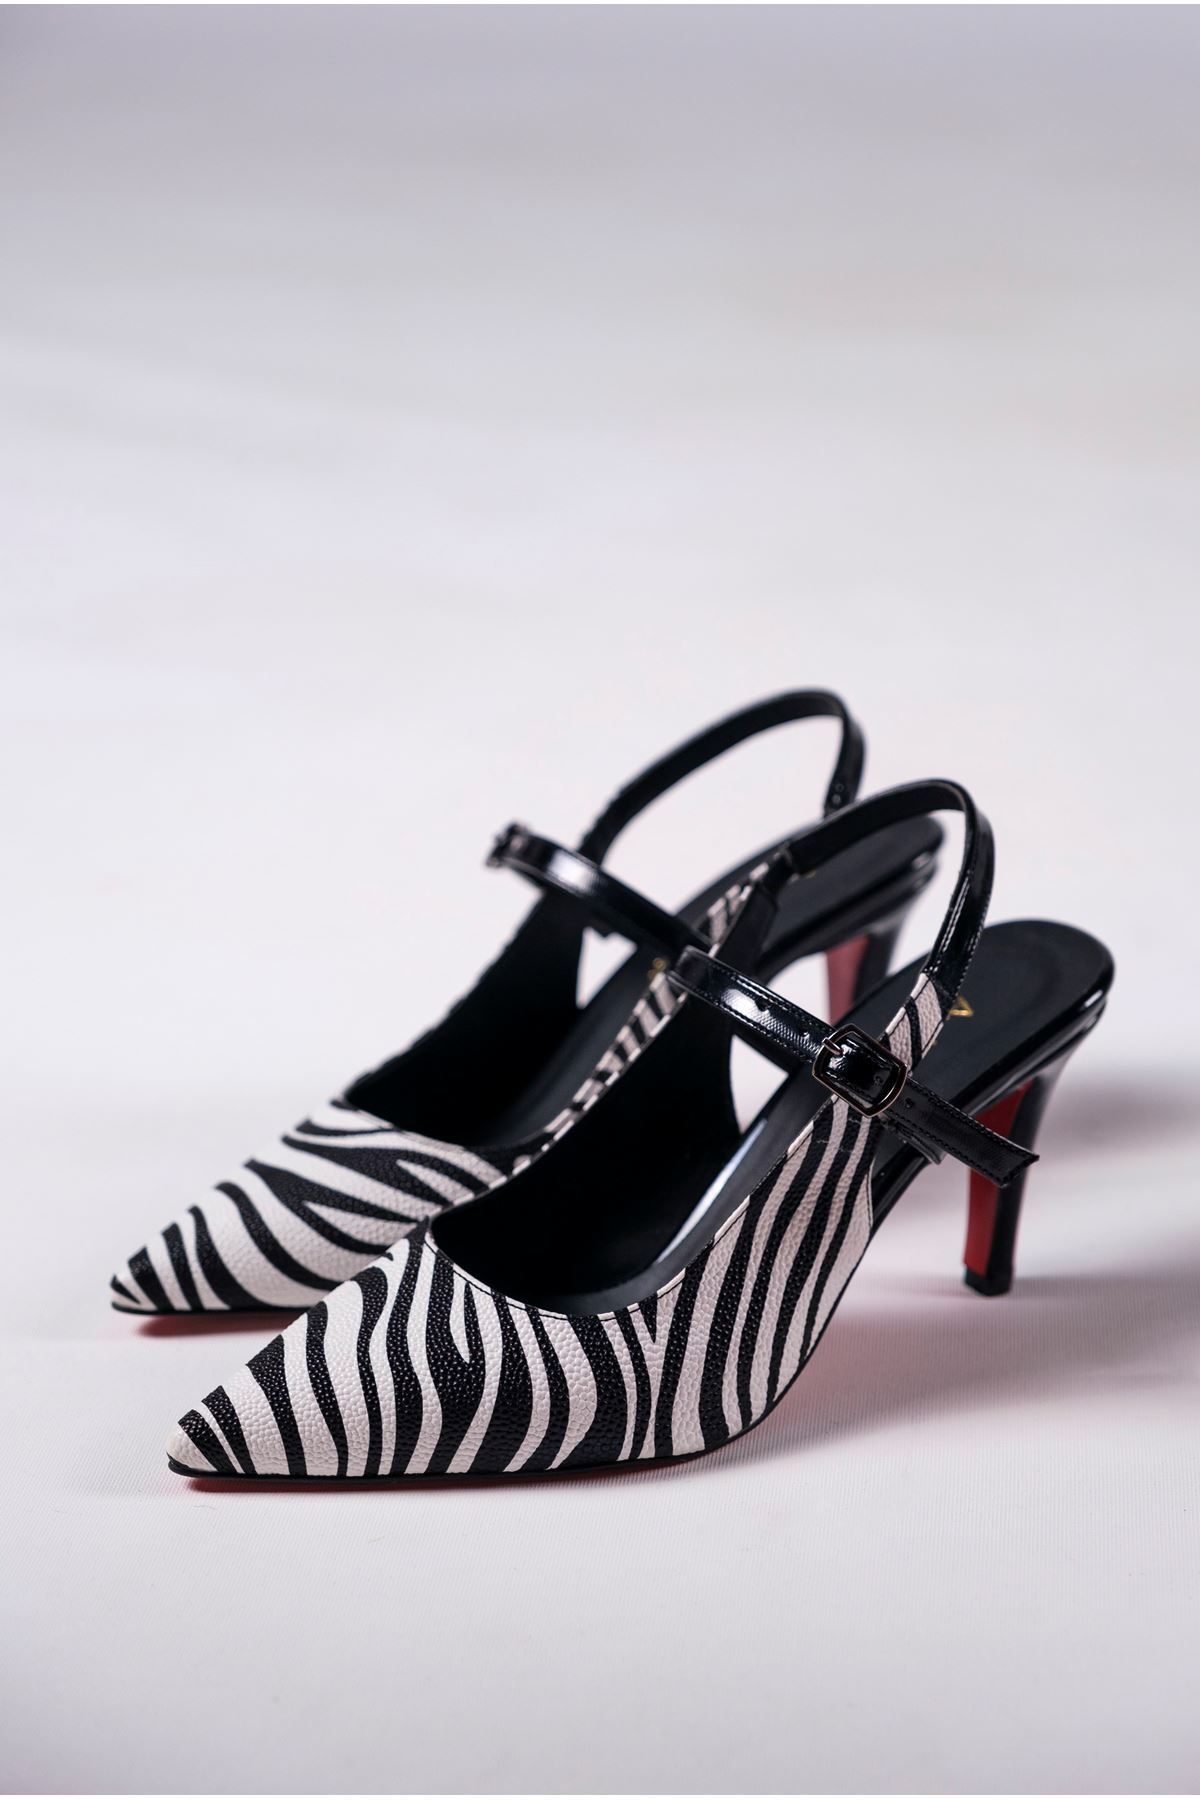 Zebra Siyah Rugan Kadın Özel Tasarım Topuklu Ayakkabı Stiletto Zavos